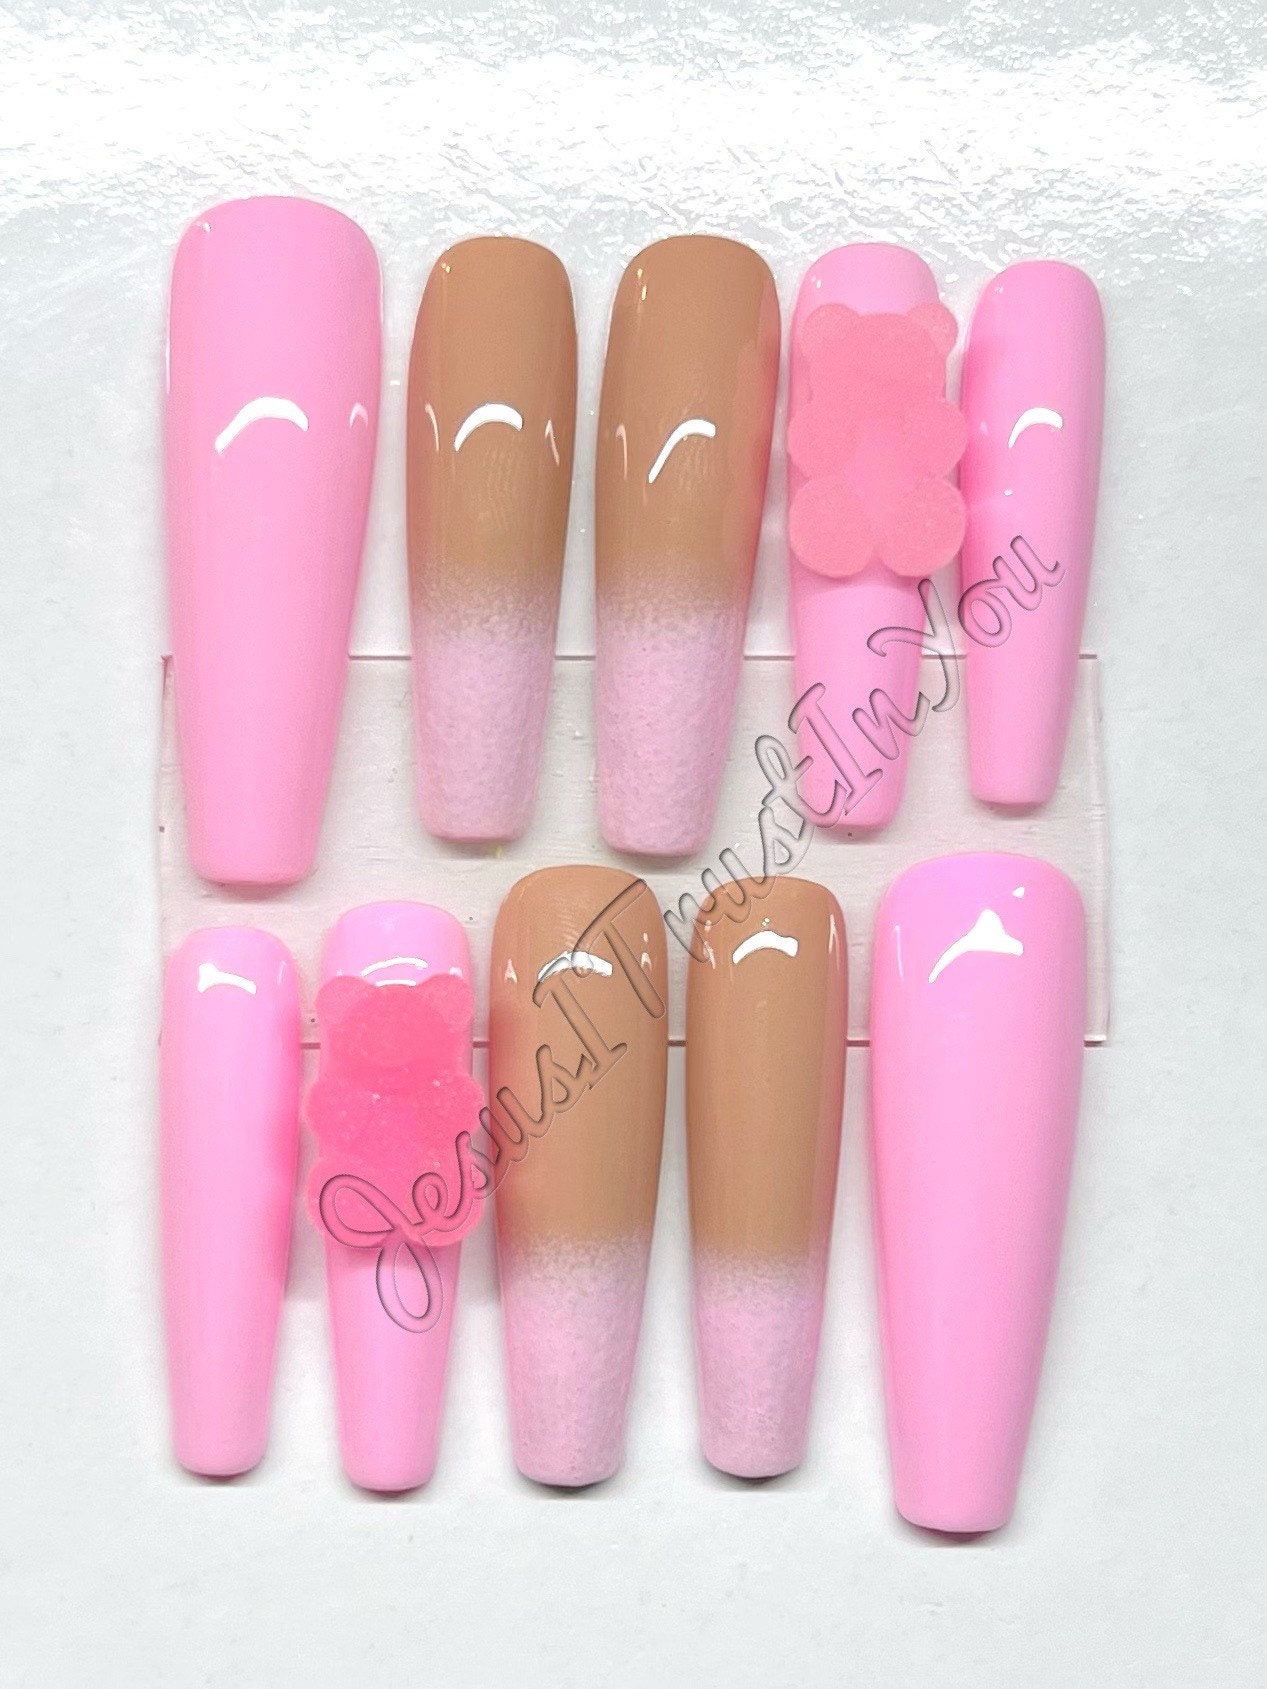 Bären Pink - Xxl Ballerina Gel Press On Nails| Wiederverwendbare Nägel | Lange Geschenke Für Sie| Strasssteine Makartt Dnd Kleber Auf von JesusItrustInYouCo